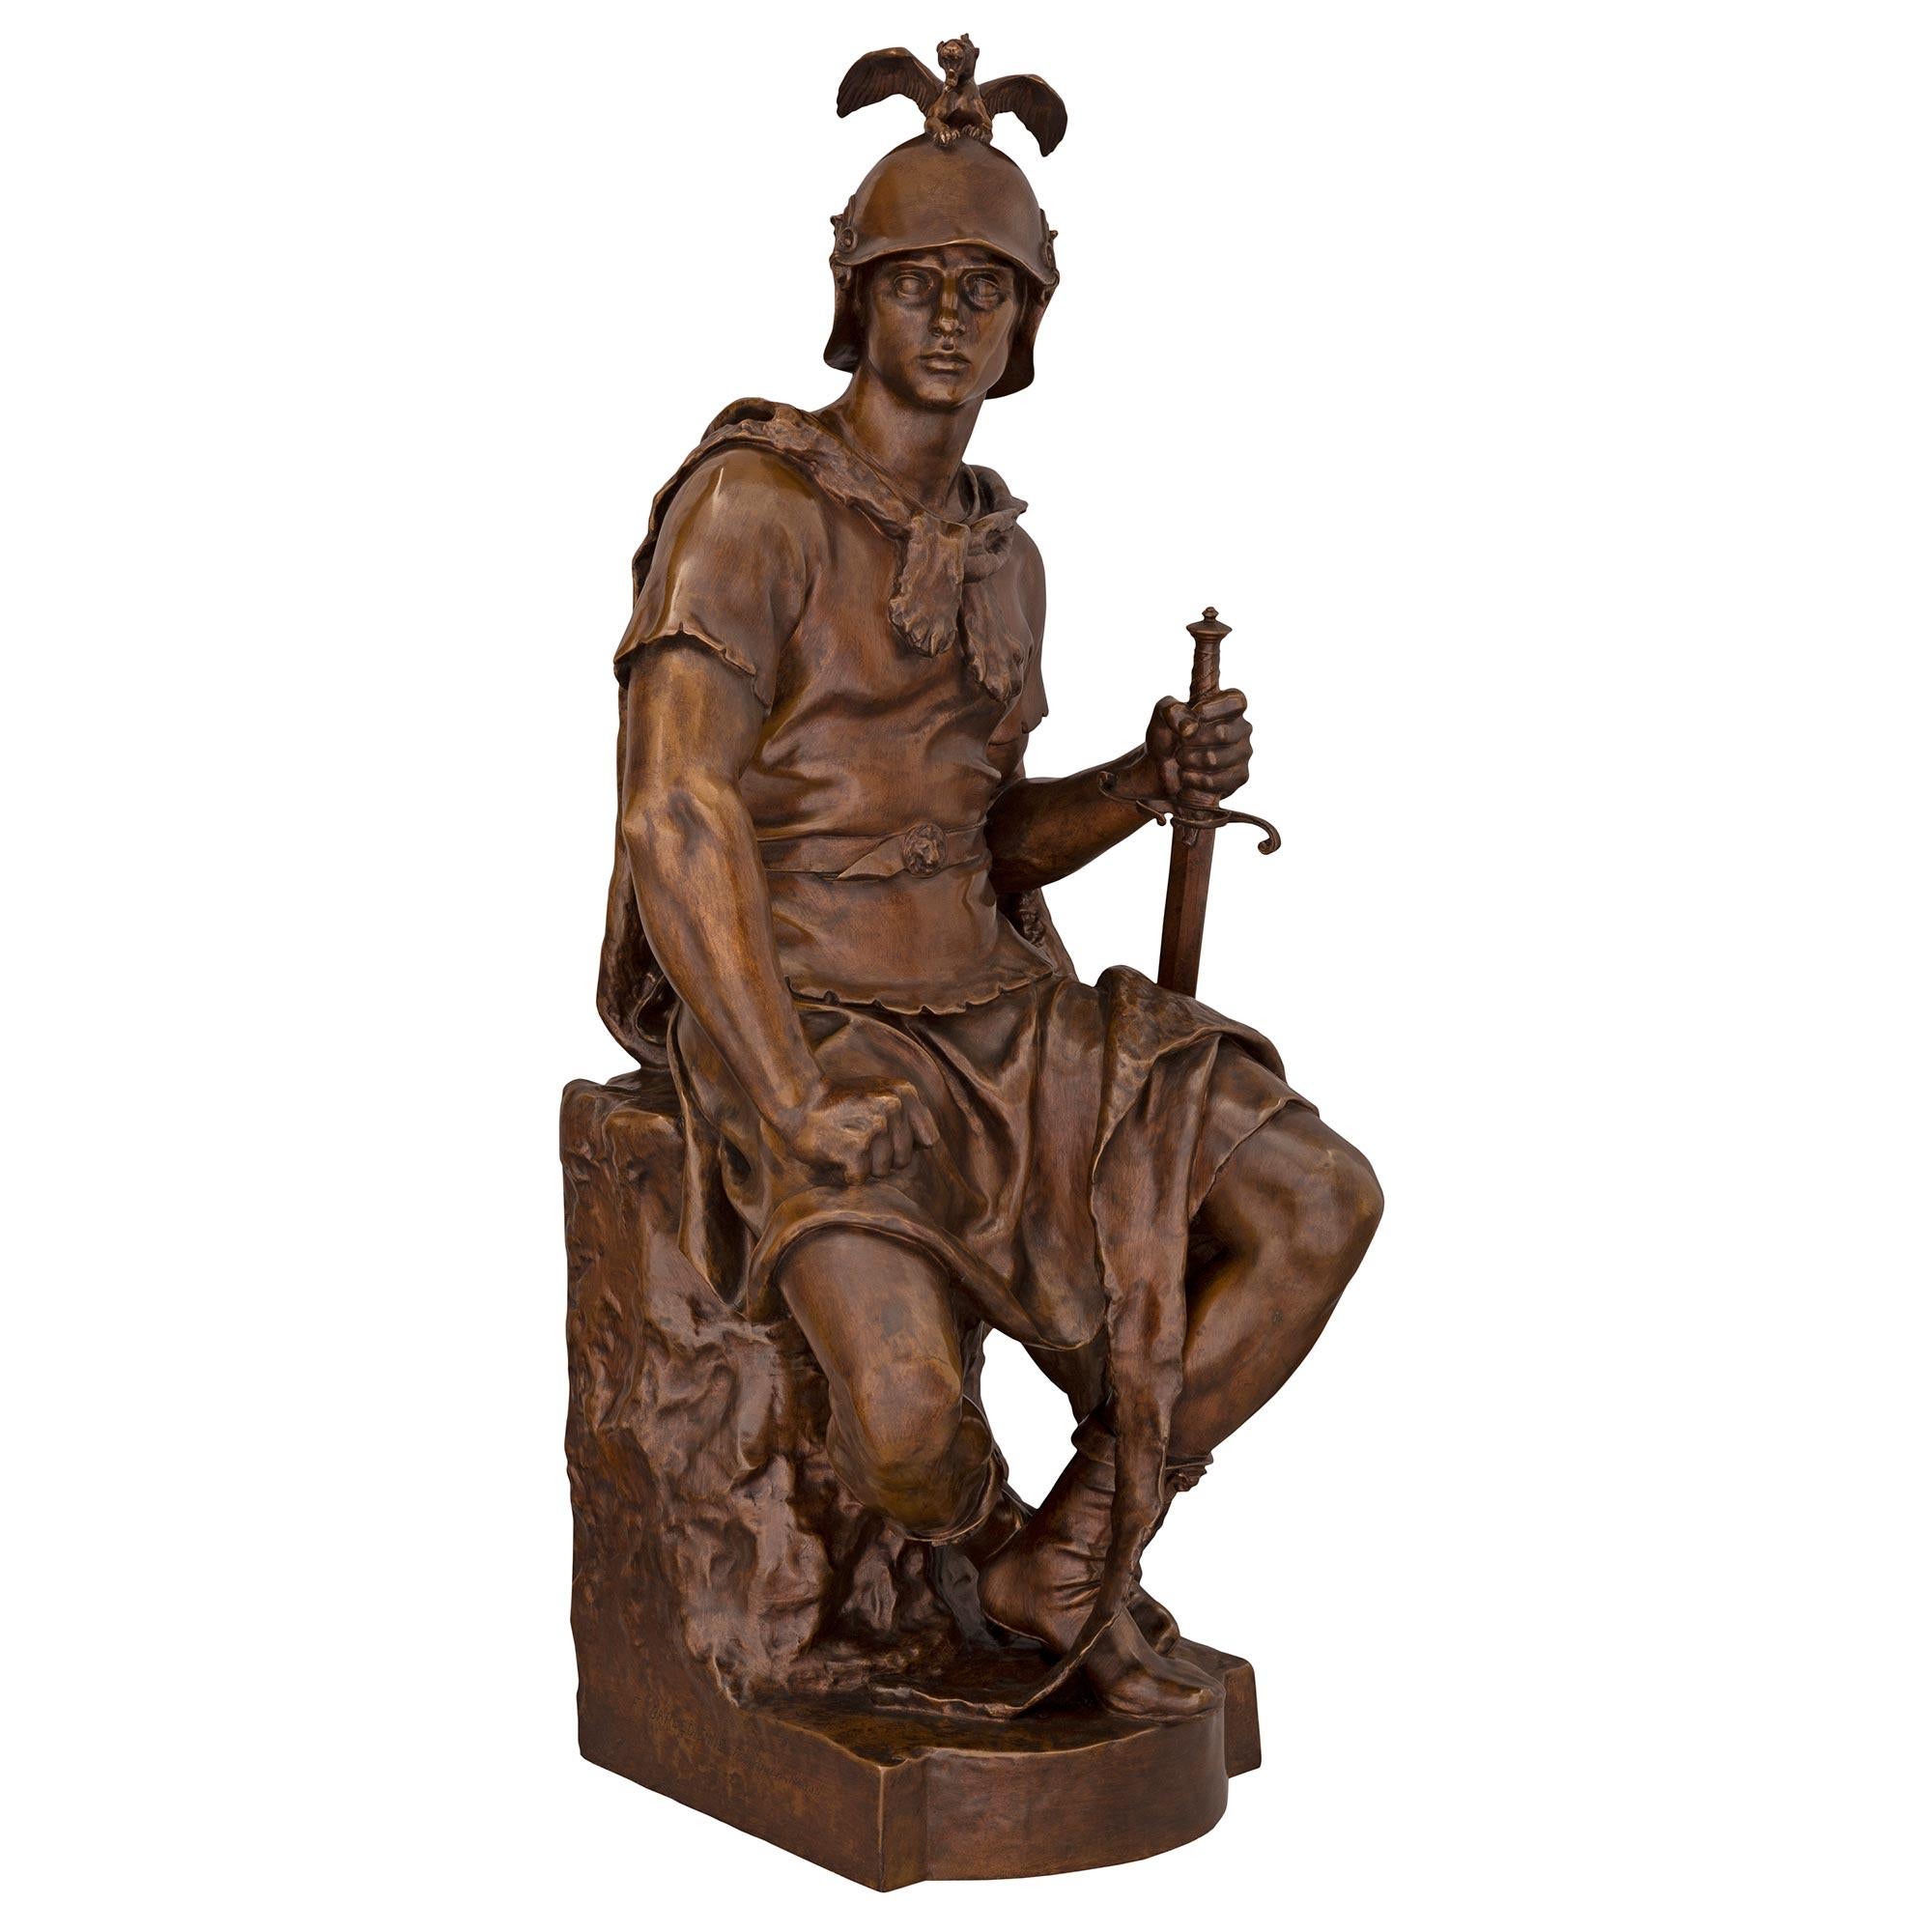 Exceptionnelle statue française en bronze patiné du XIXe siècle signée P. Dubois et F. Barbedienne. La statue, intitulée Le Courage Militaire, est surmontée d'une base carrée à l'avant arrondi. Au-dessus, le beau soldat est assis sur un tronc